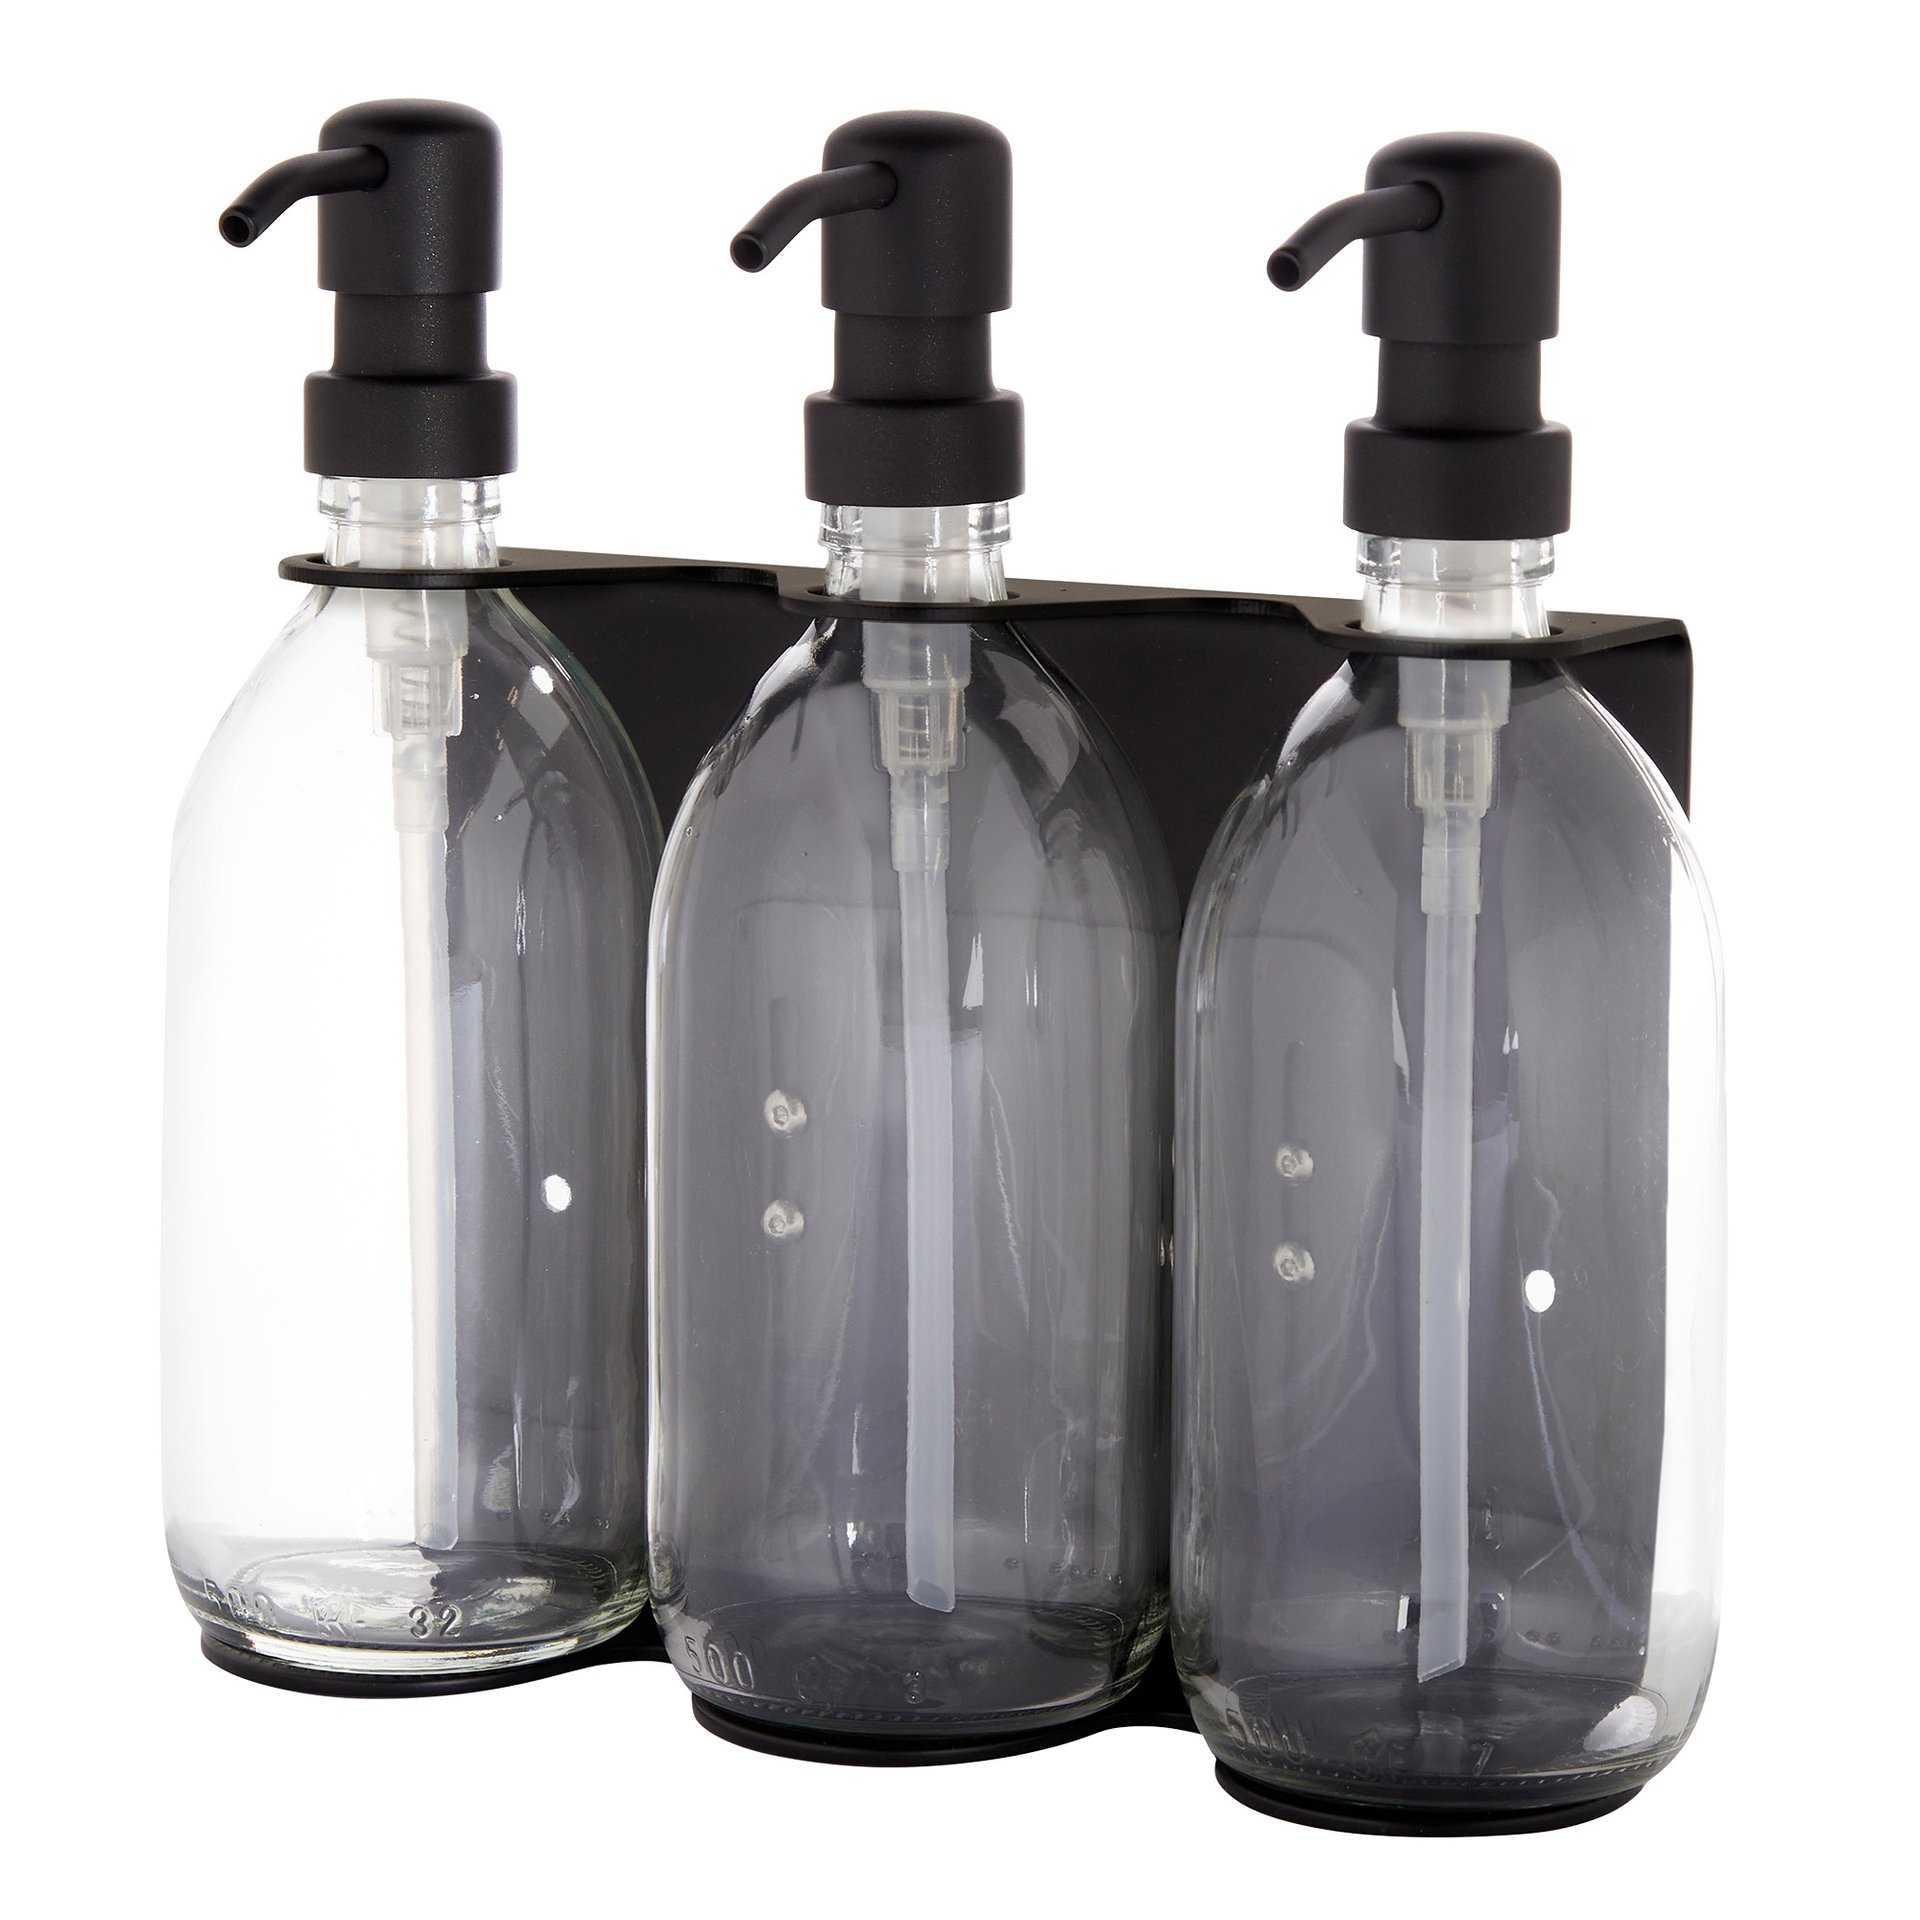 Distributeur de savon mural triple en noir avec distributeurs transparents clairs et pompes noires